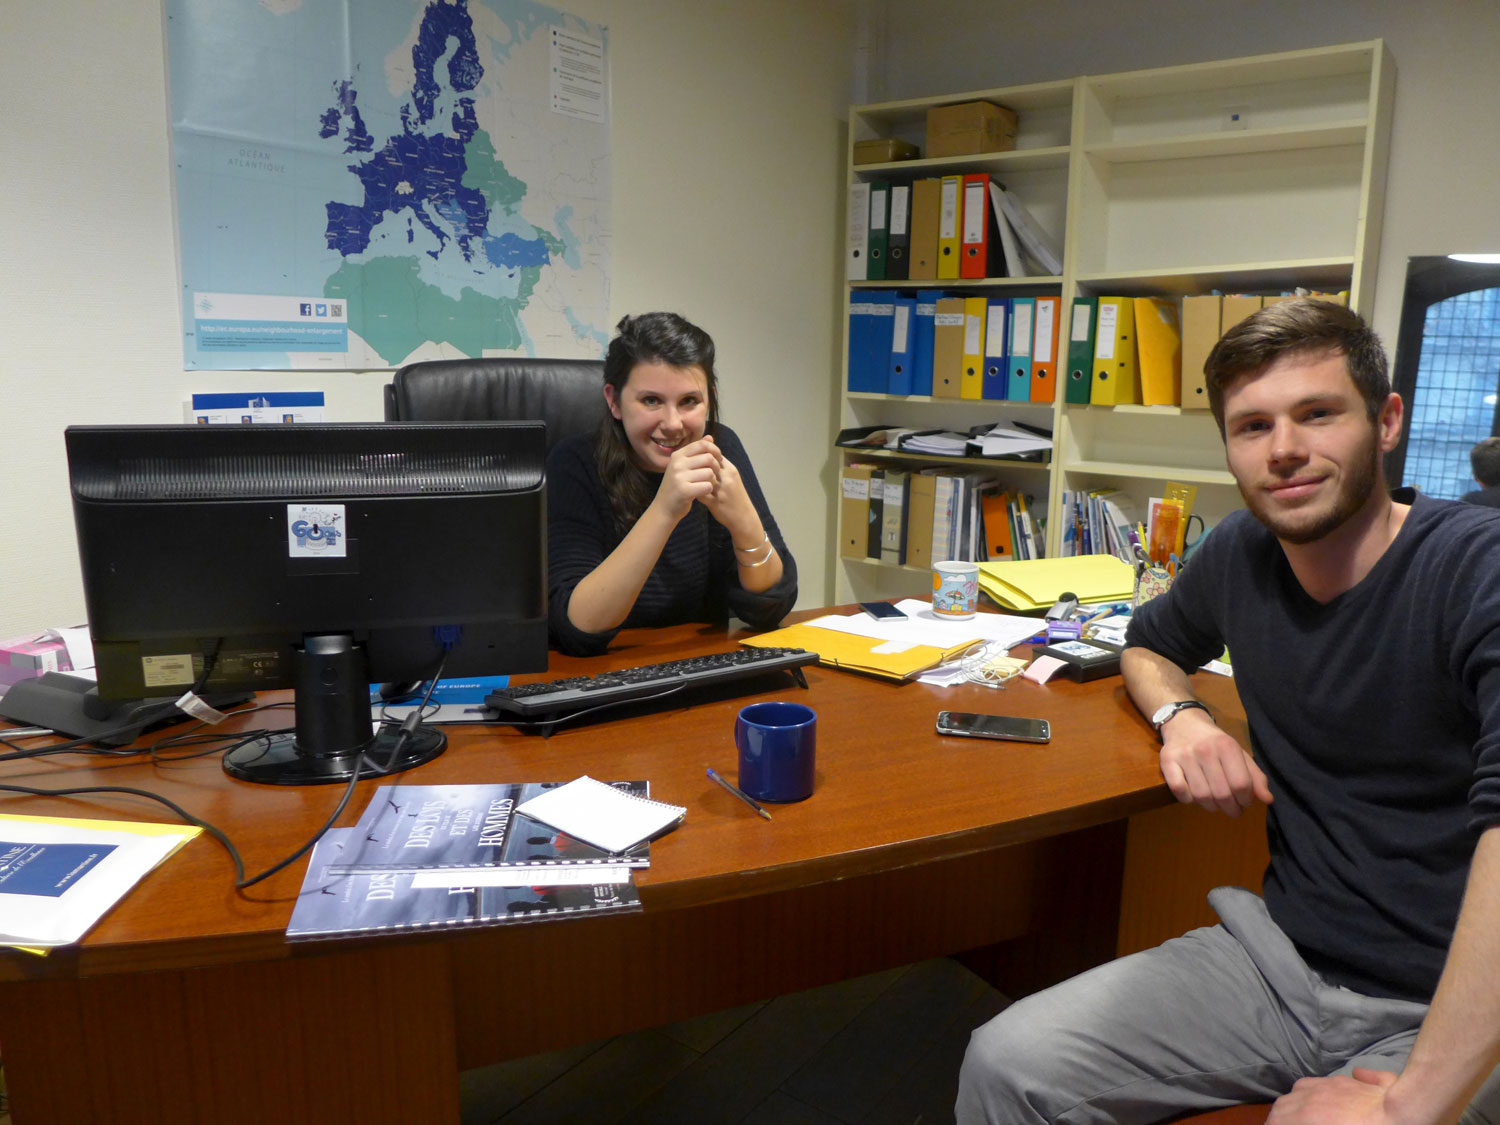 Marine et Jérôme, avant de travailler pour la Maison de l’Europe de Paris, ont tous les deux participé au programme Erasmus